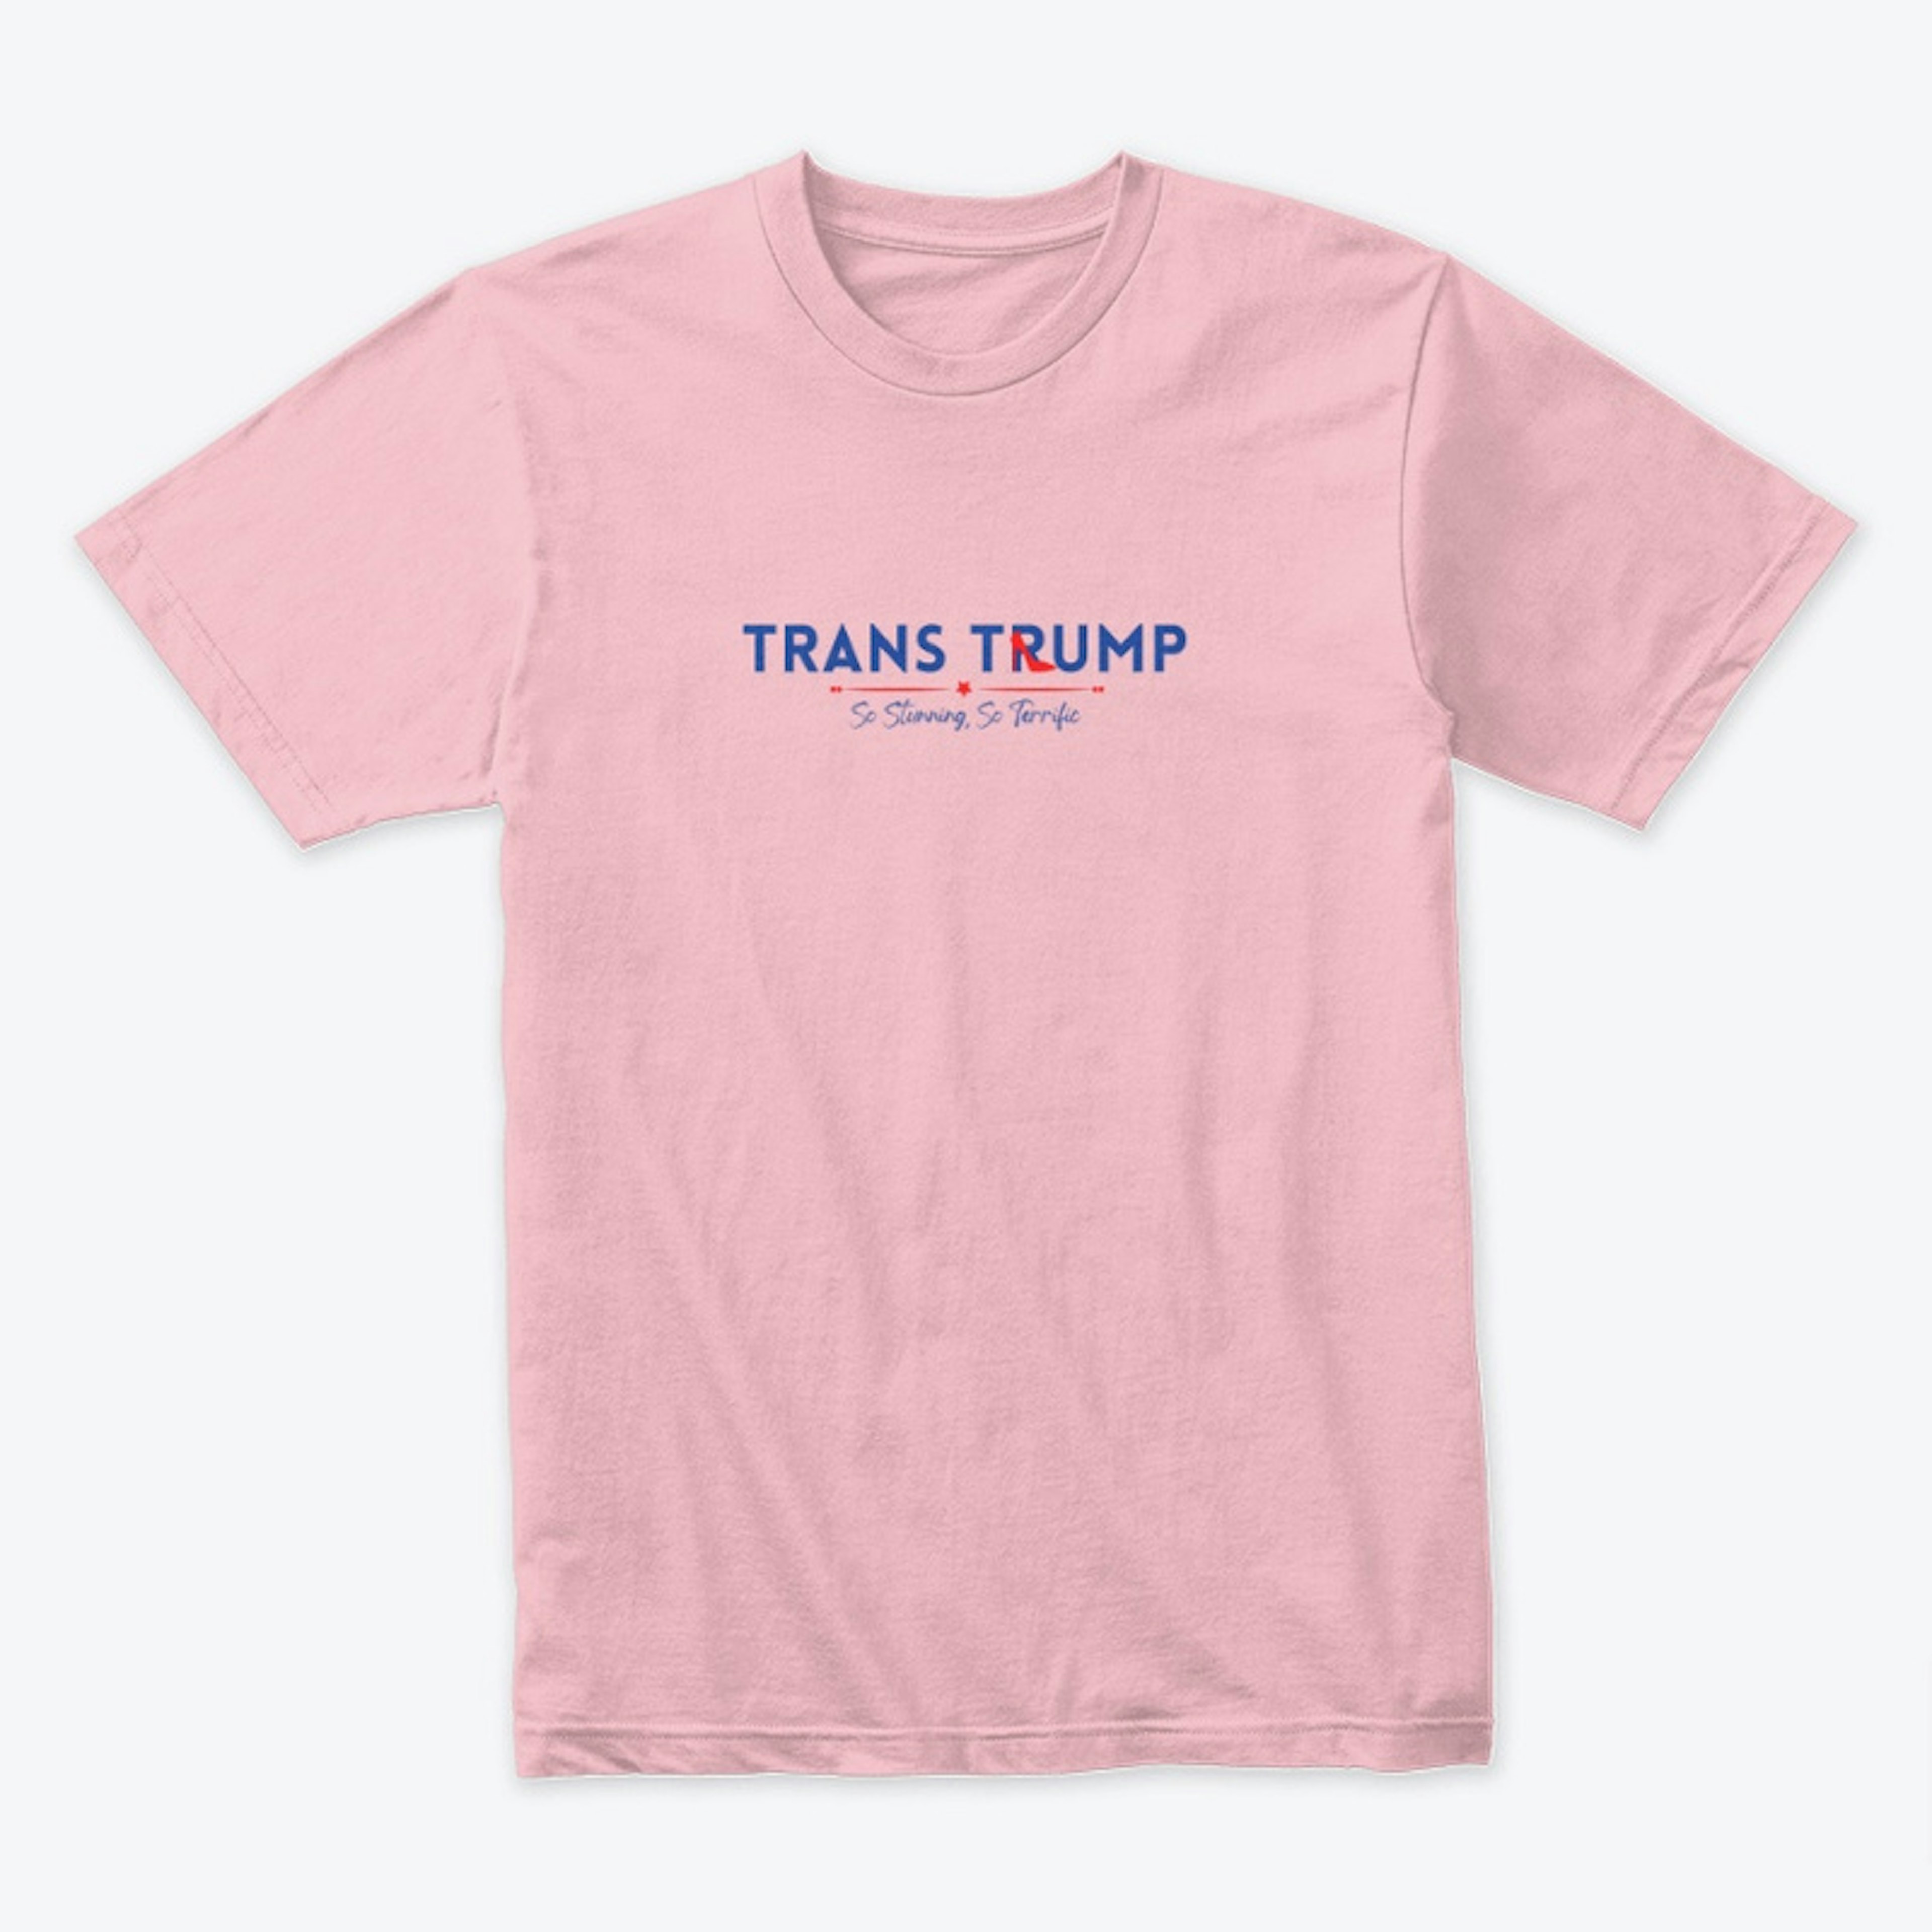 Trans Trump